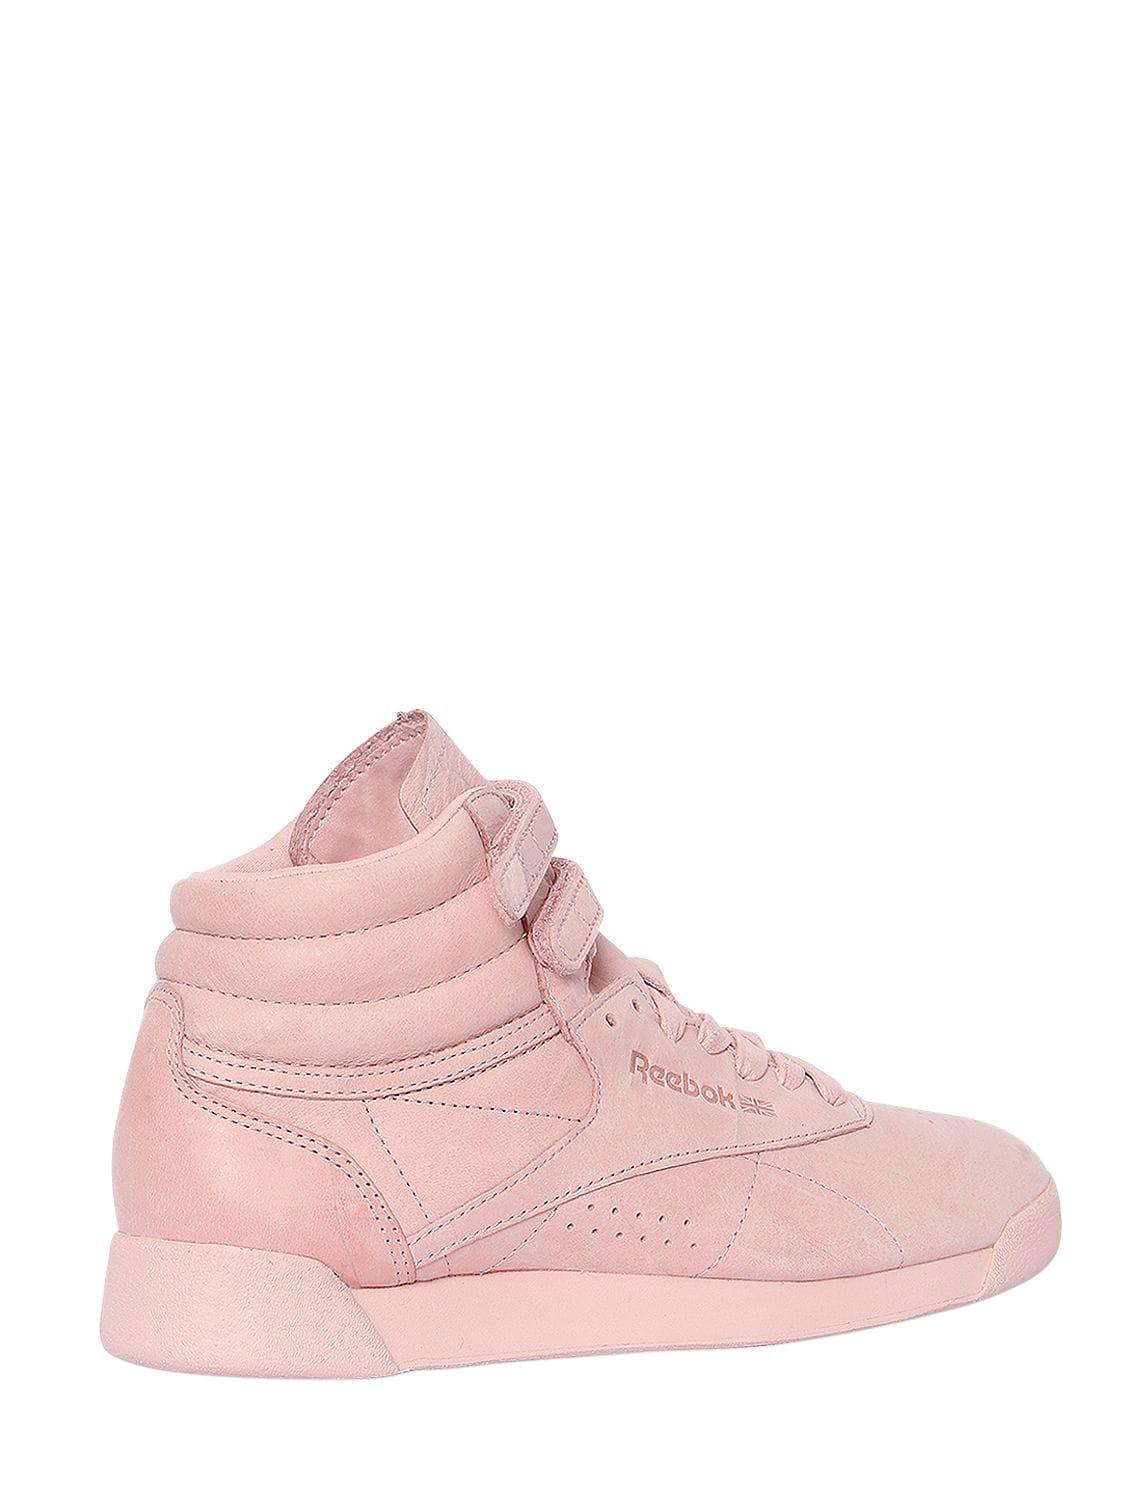 Reebok Freestyle Nubuck High Top Sneakers in Pink - Lyst